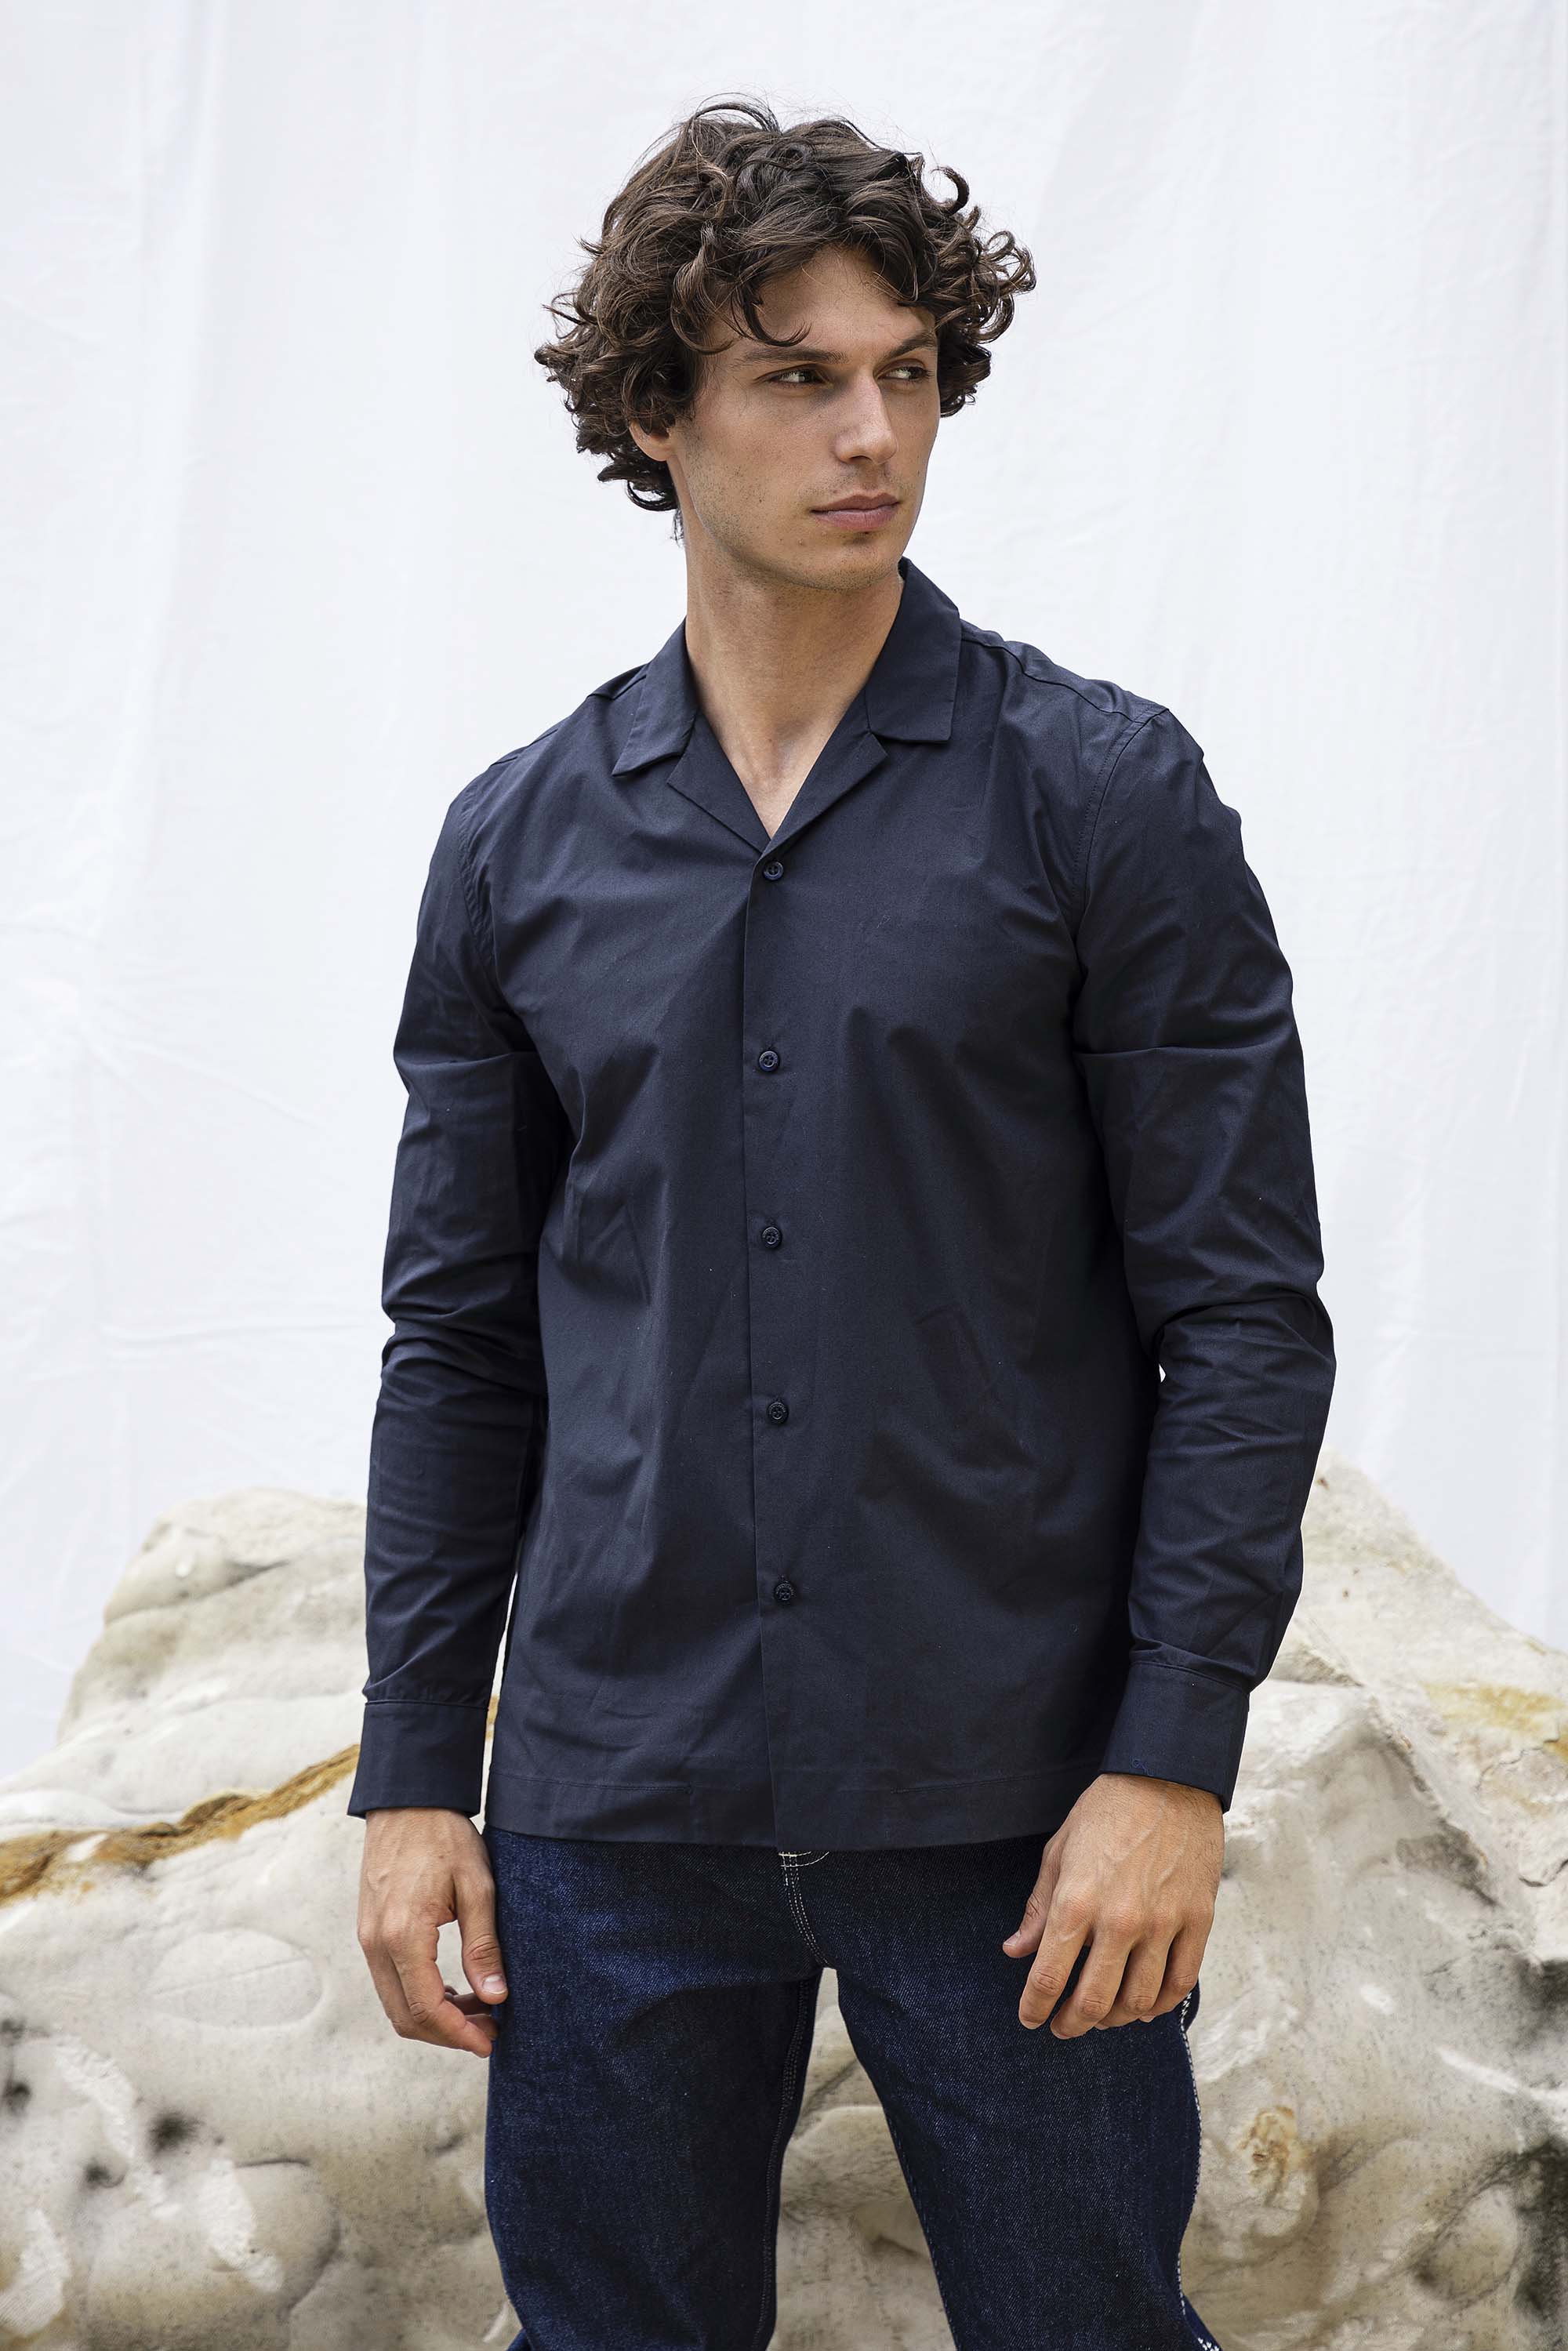 Chemise Guillermo Bleu Marine chemise homme aux lignes délicates, élégance assurée